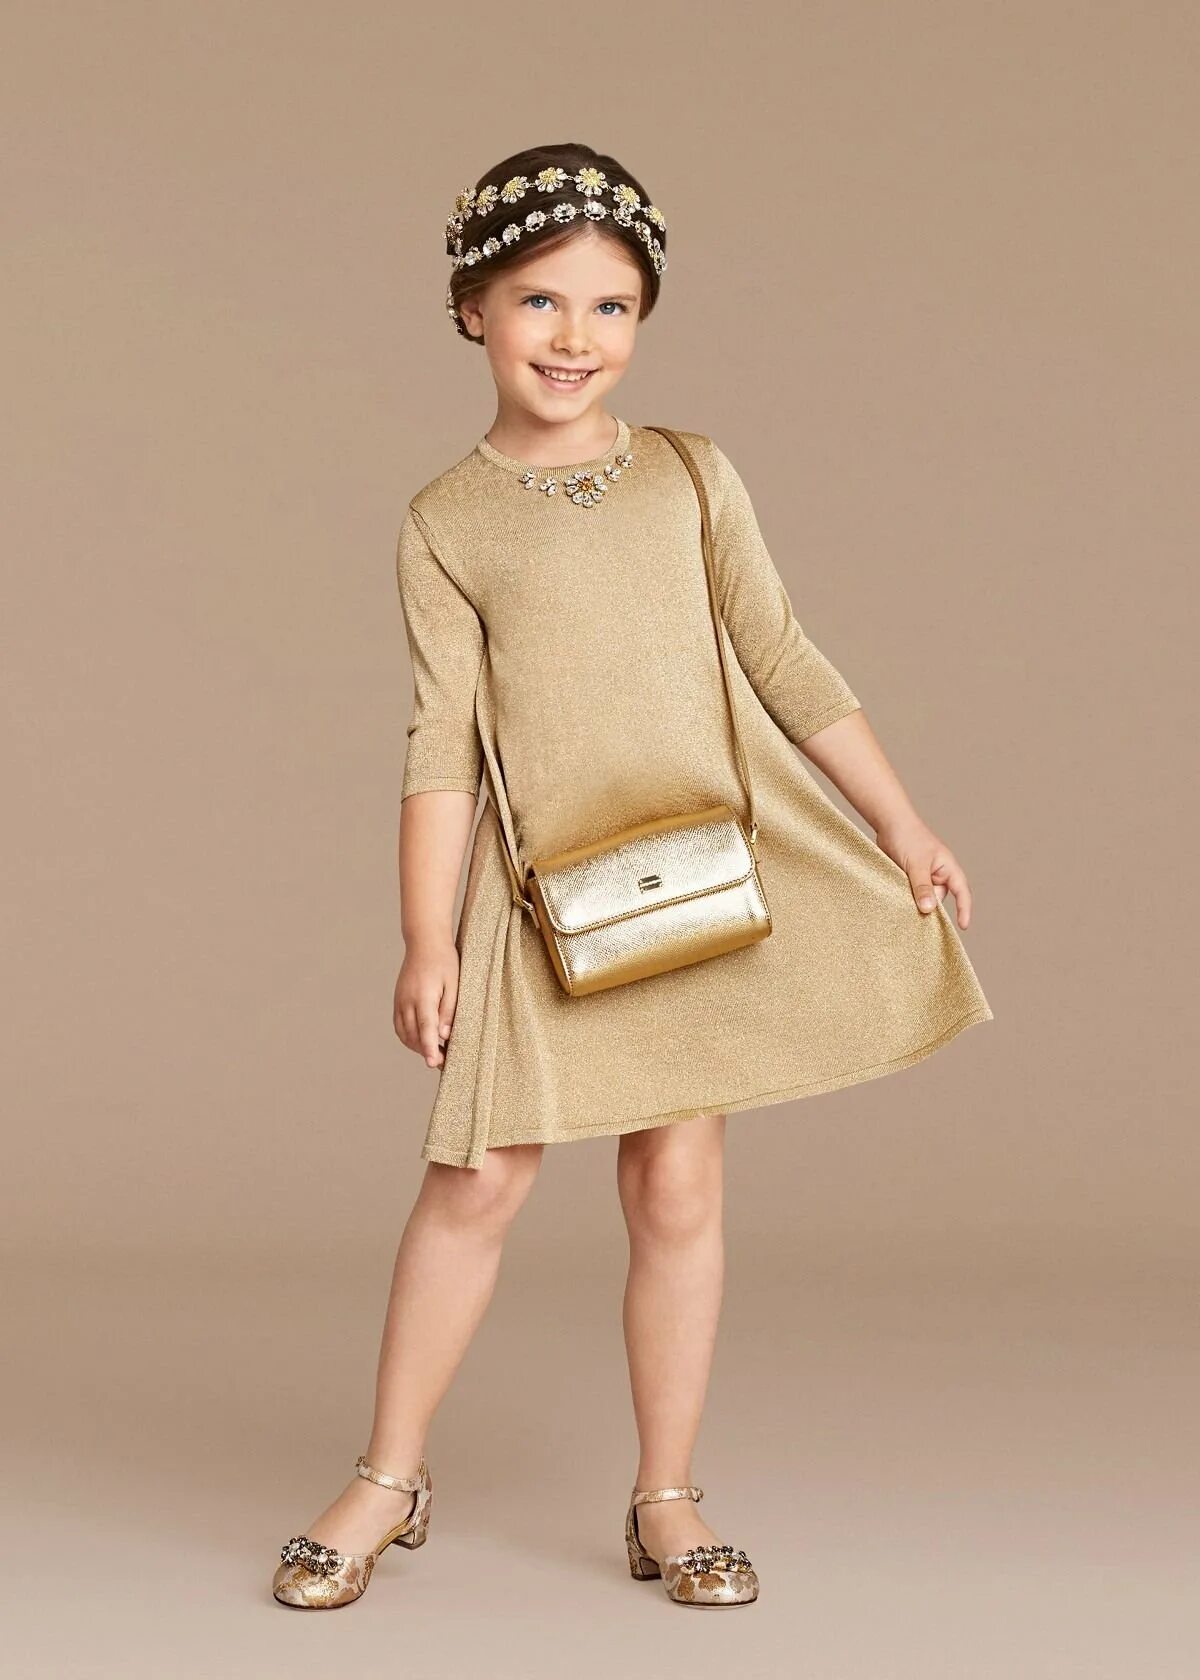 Дети gold. Стильные детские платья. Стильное платье для ребенка. Модные детские платья. Стильное модное платье на девочку.